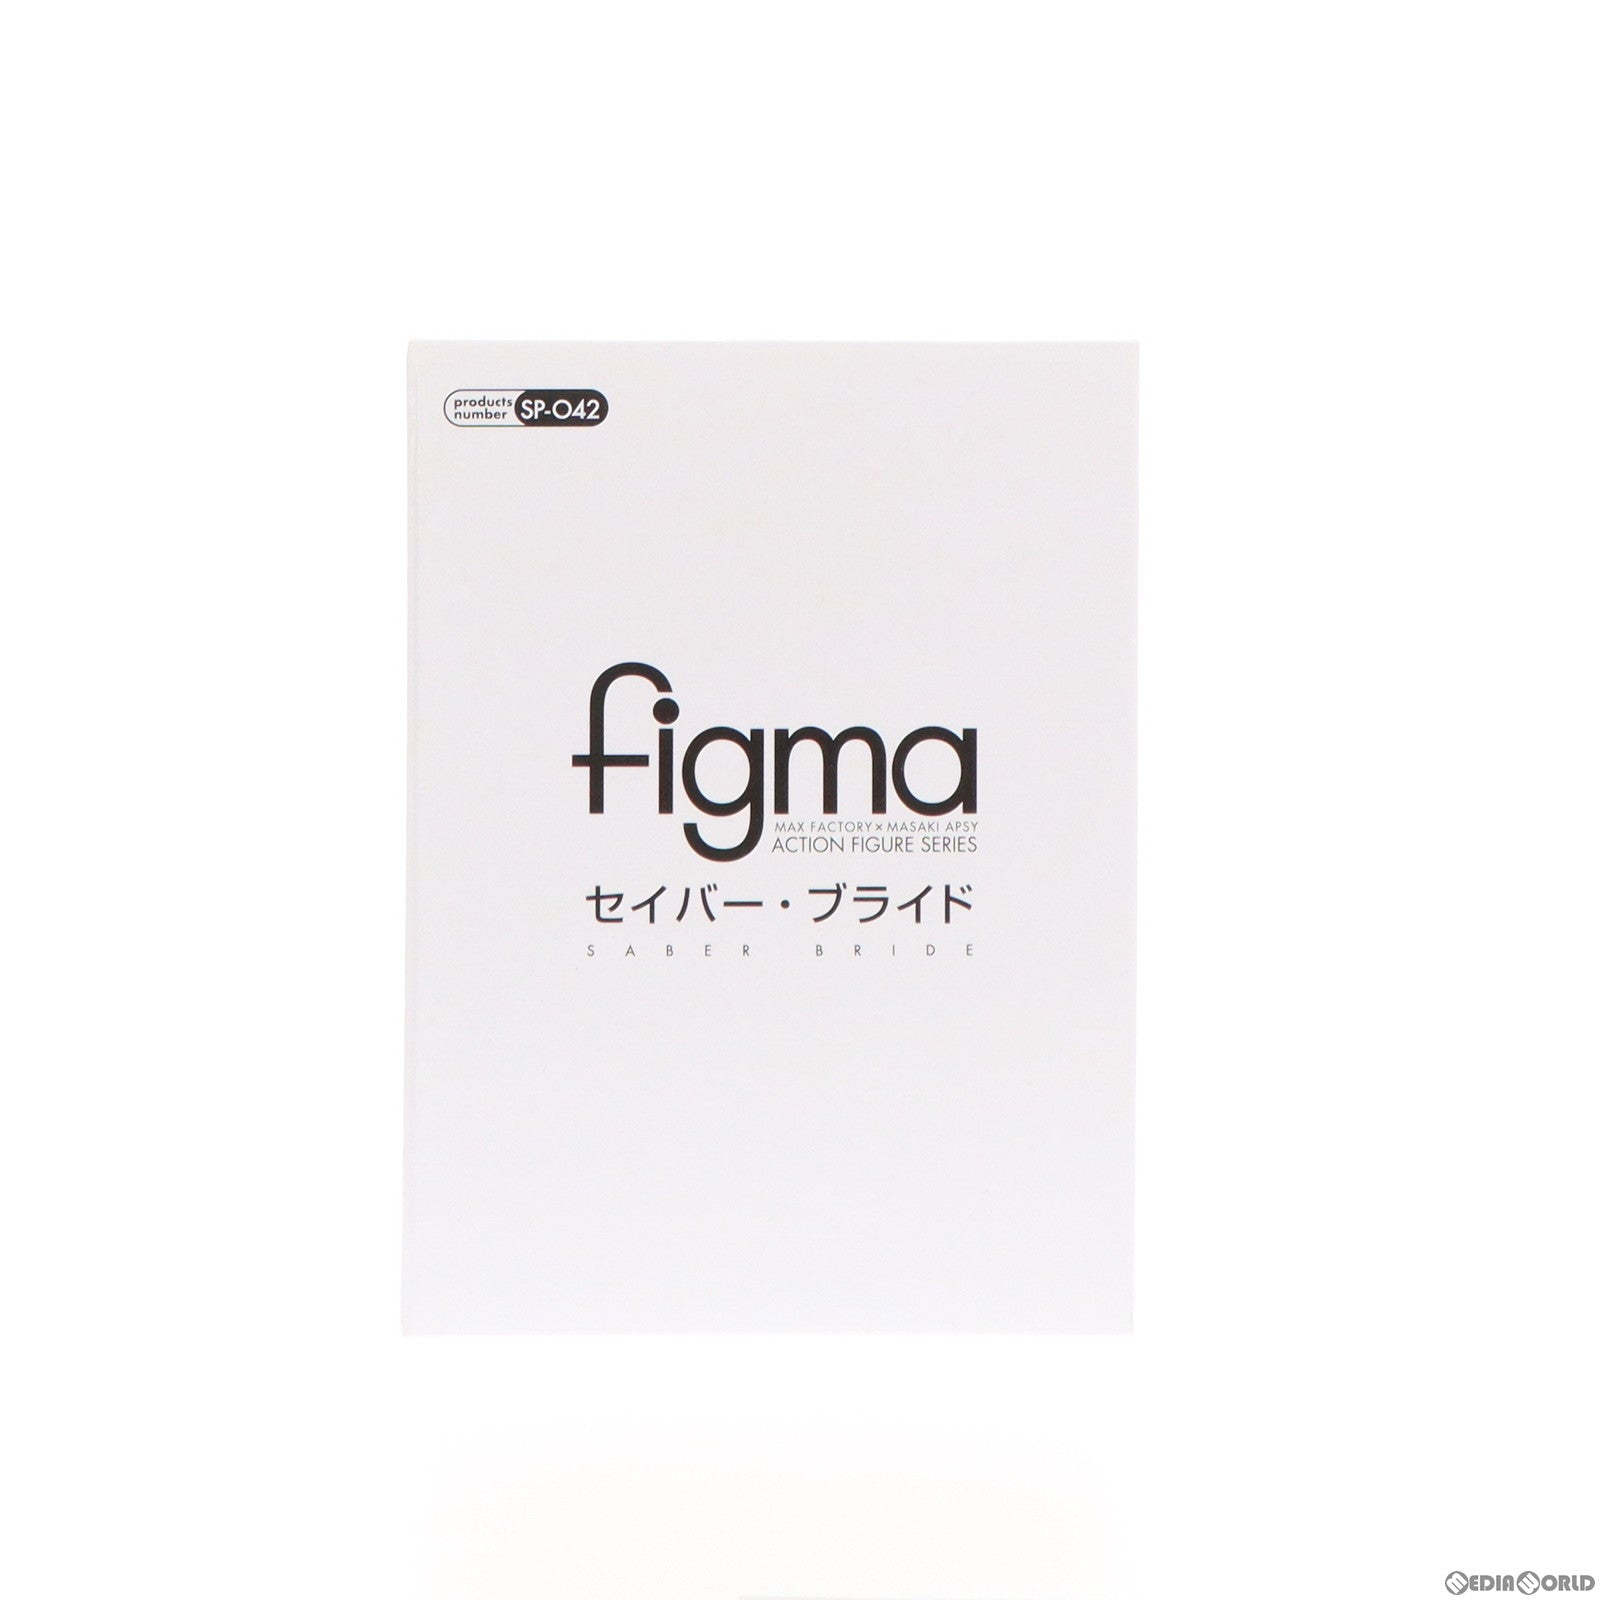 【中古即納】[FIG](フィギュア単品)figma(フィグマ) セイバー・ブライド PSPソフト Fate/EXTRA CCC(フェイト/エクストラ CCC) 限定版 TYPE-MOON Virgin White Box 同梱品 完成品 可動フィギュア グッドスマイルカンパニー/マーベラスエンターテイメント(20130328)